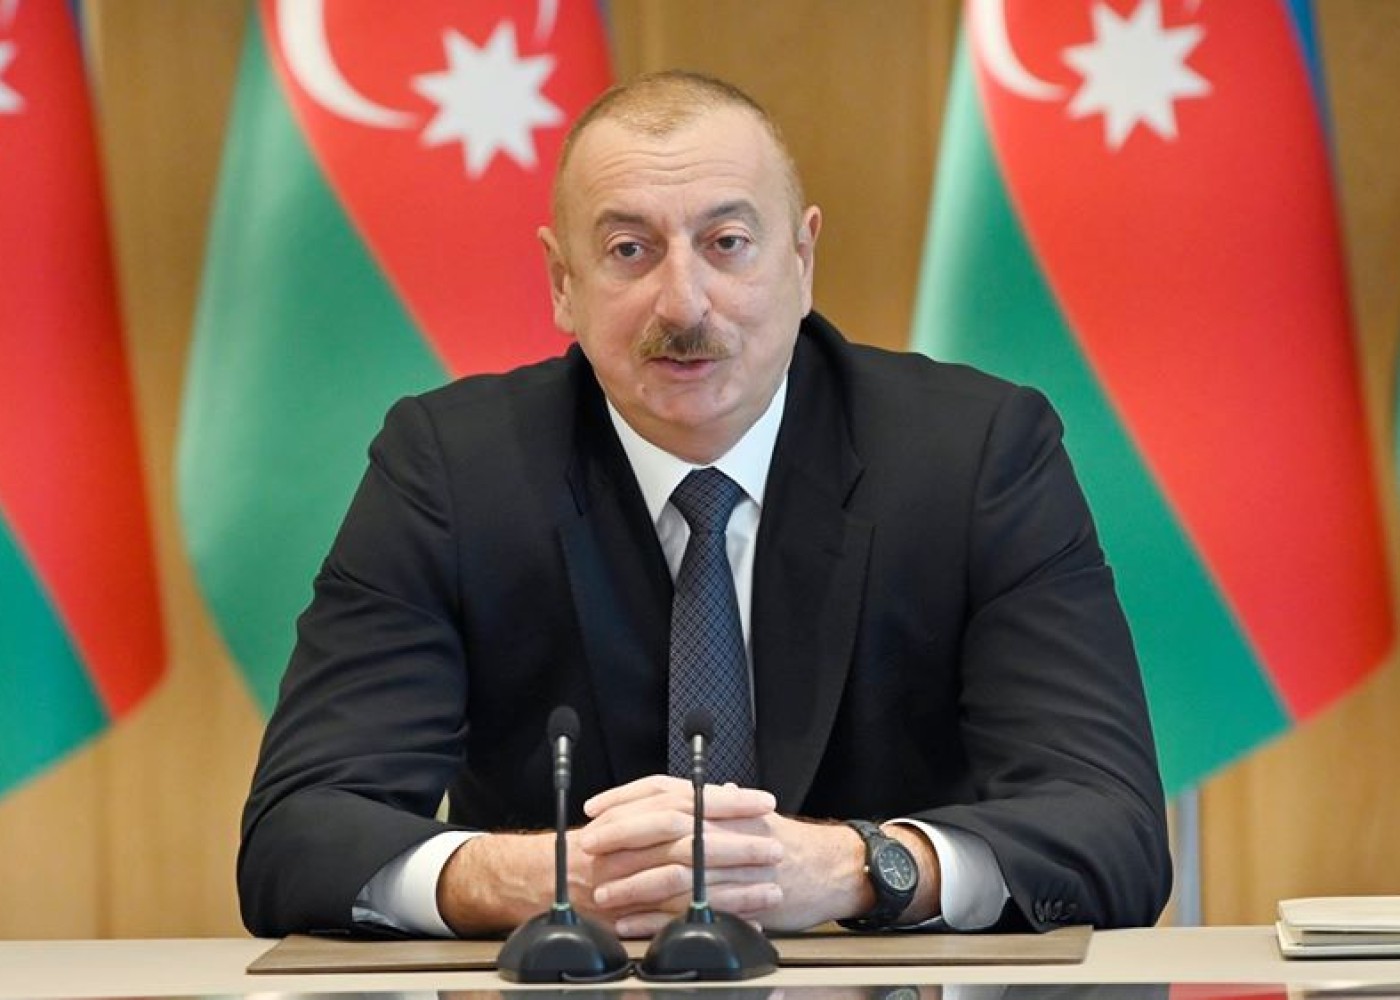 "Azərbaycan ərazisində separatçılara yer yoxdur və bundan sonra da olmayacaq"- Prezident